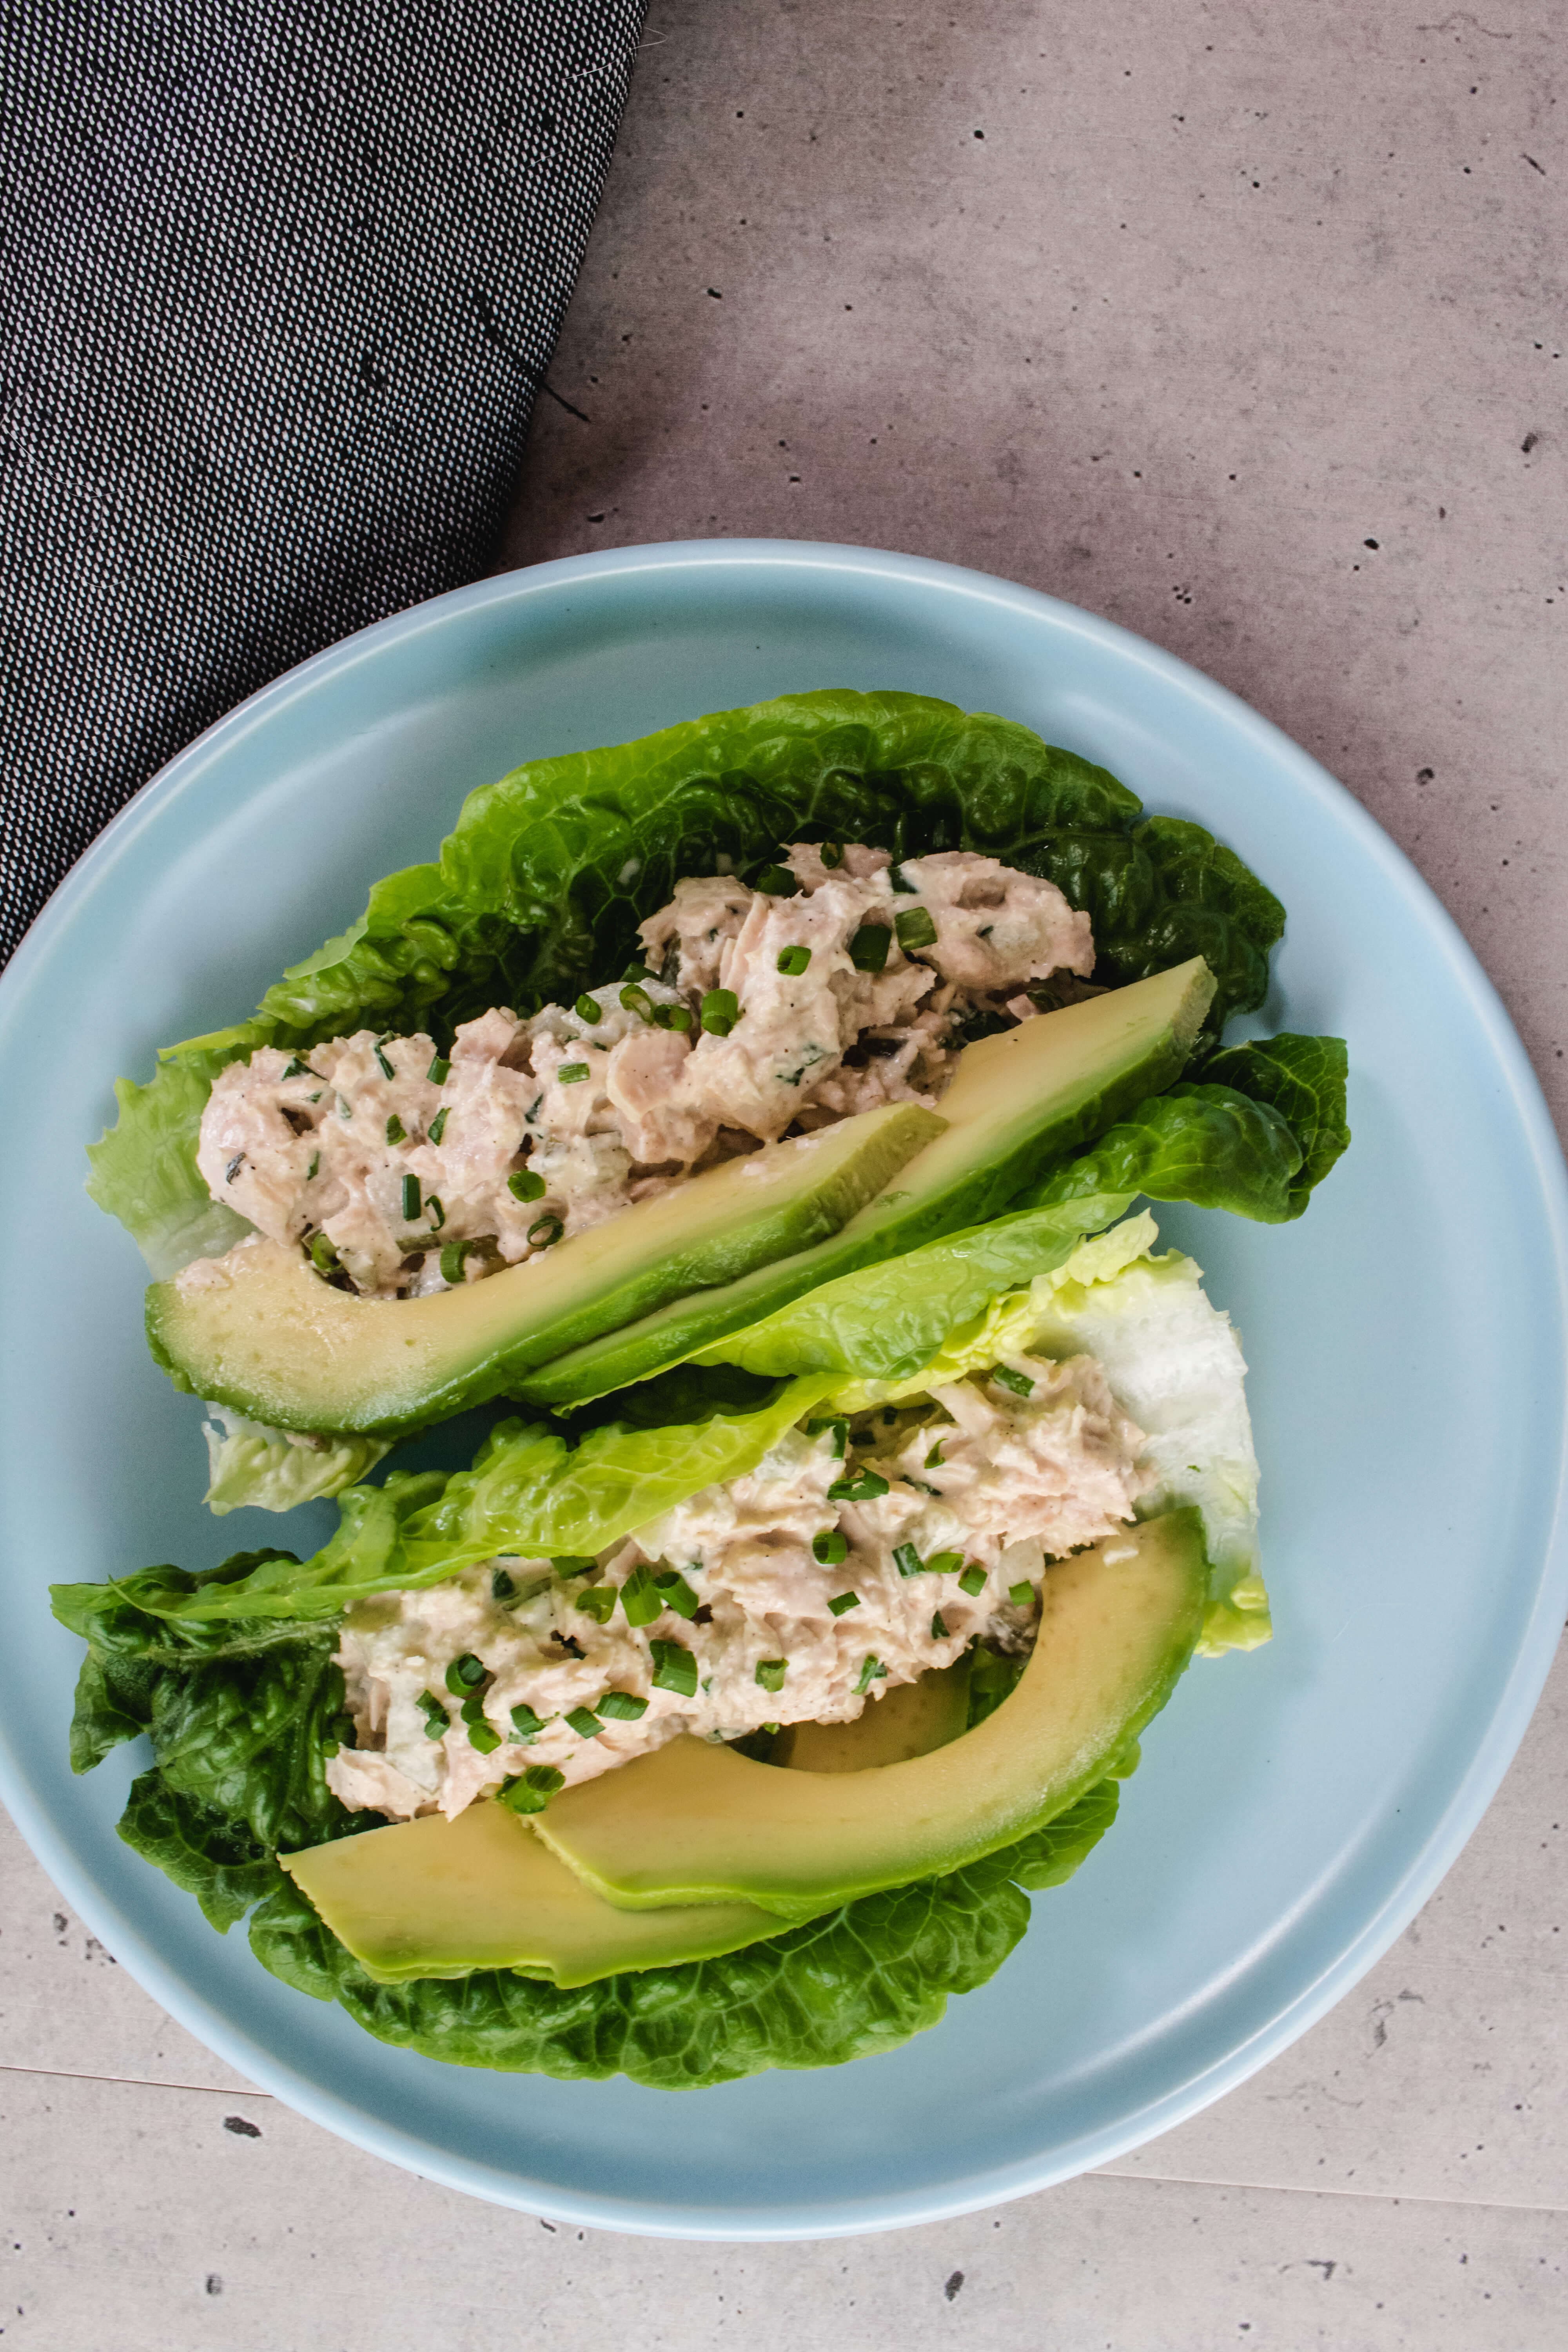 Tuna salad with mayo